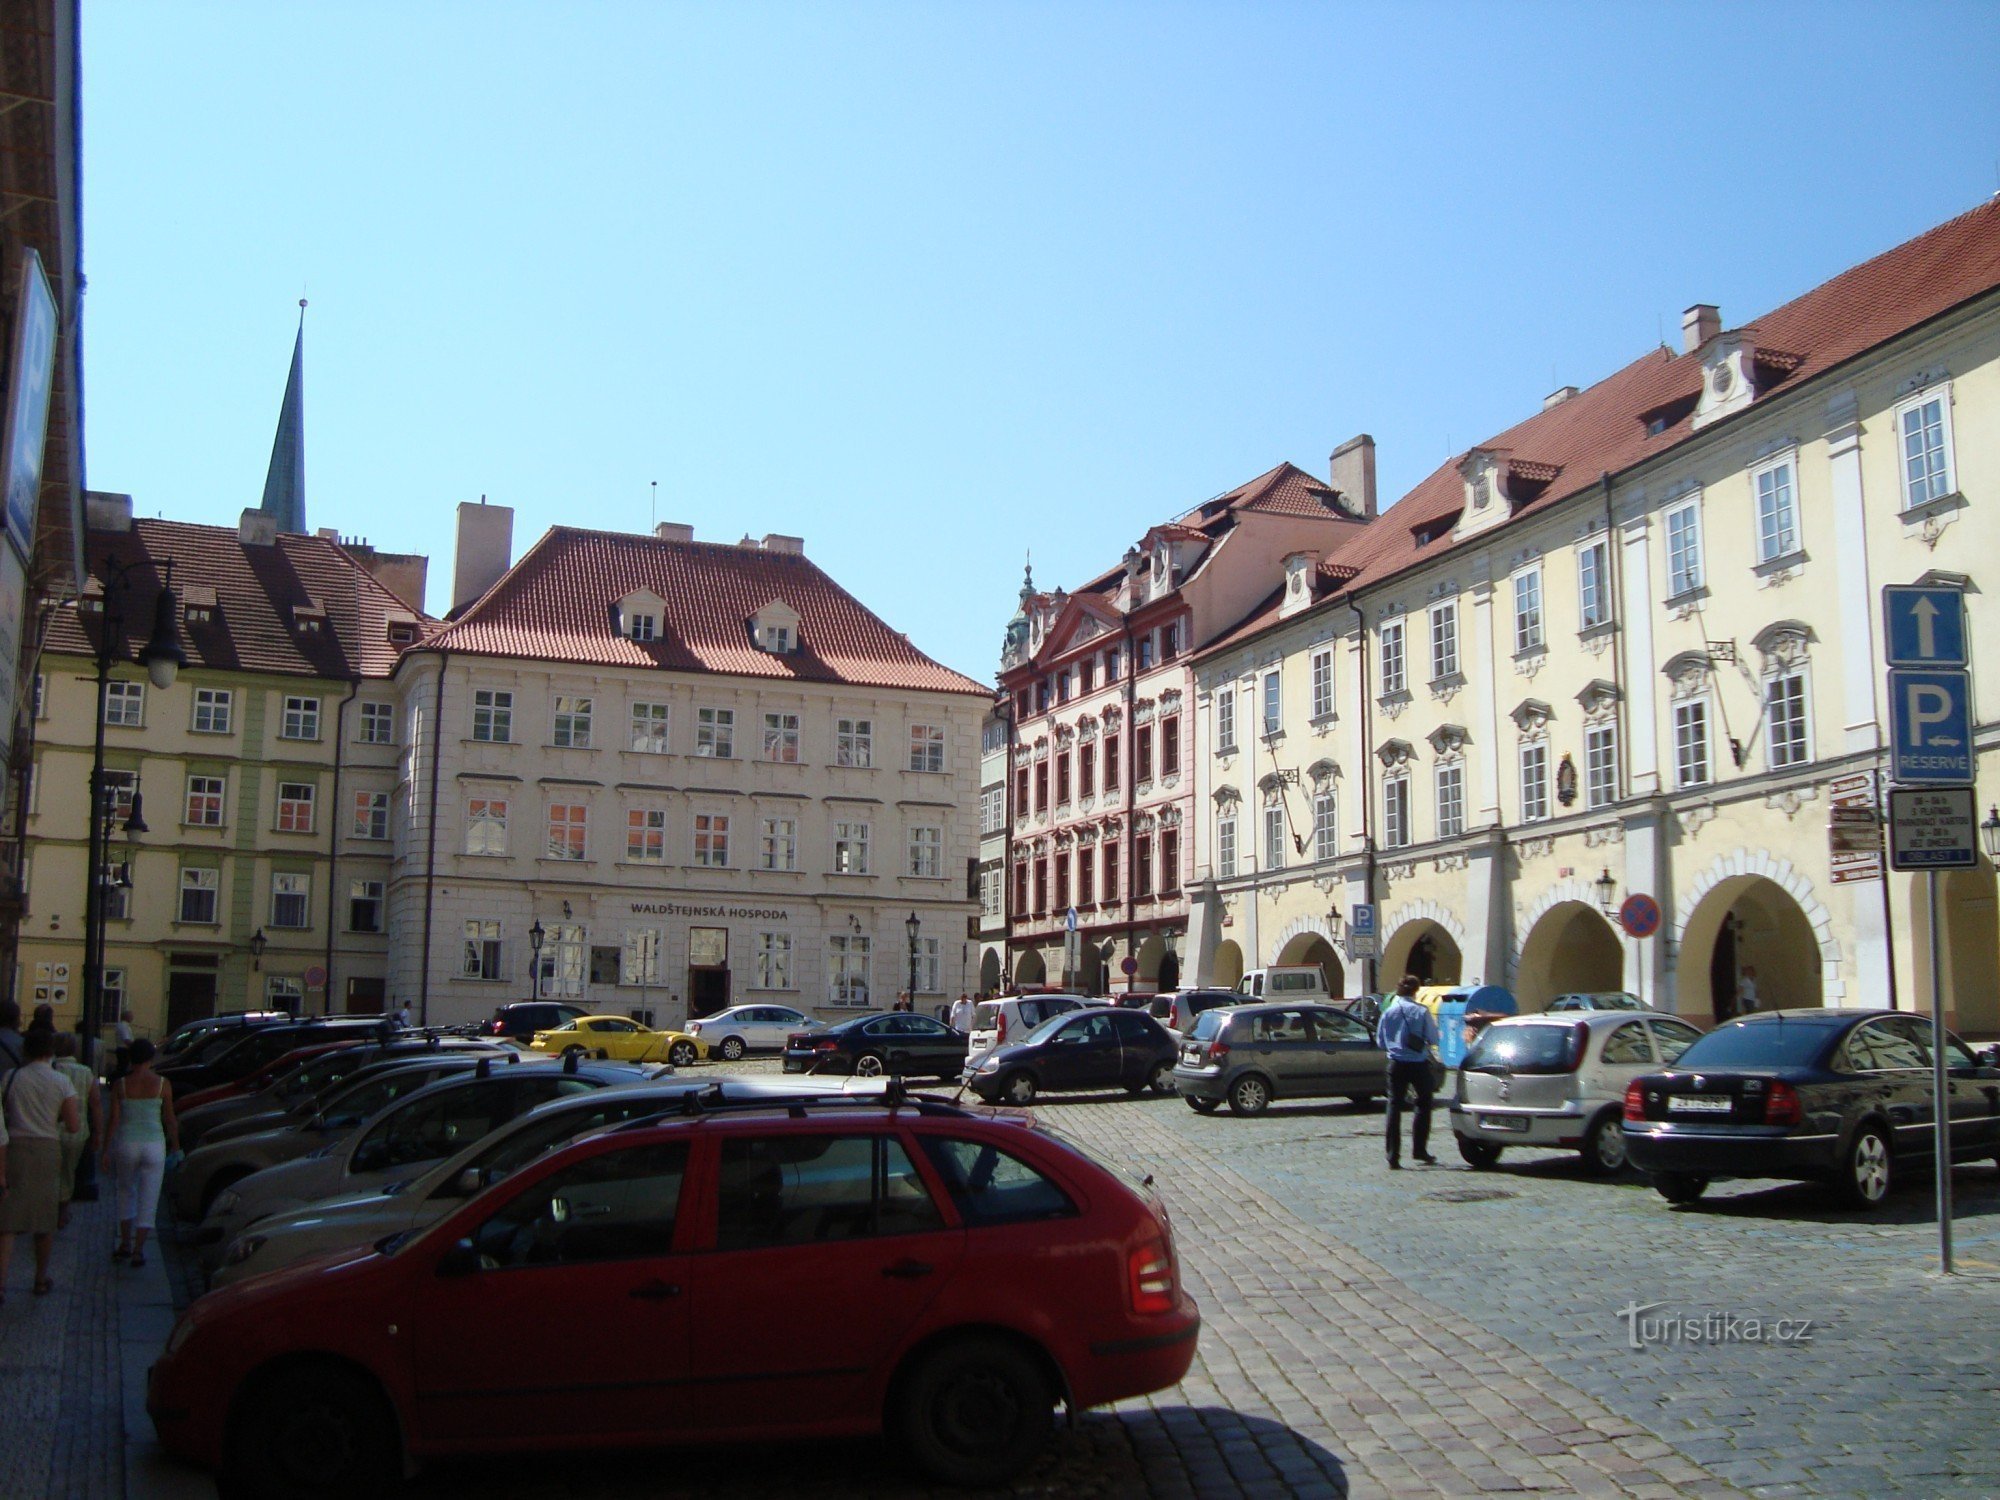 Trg Praga-Valdštejn od vrat palače Valdštejn-Foto: Ulrych Mir.